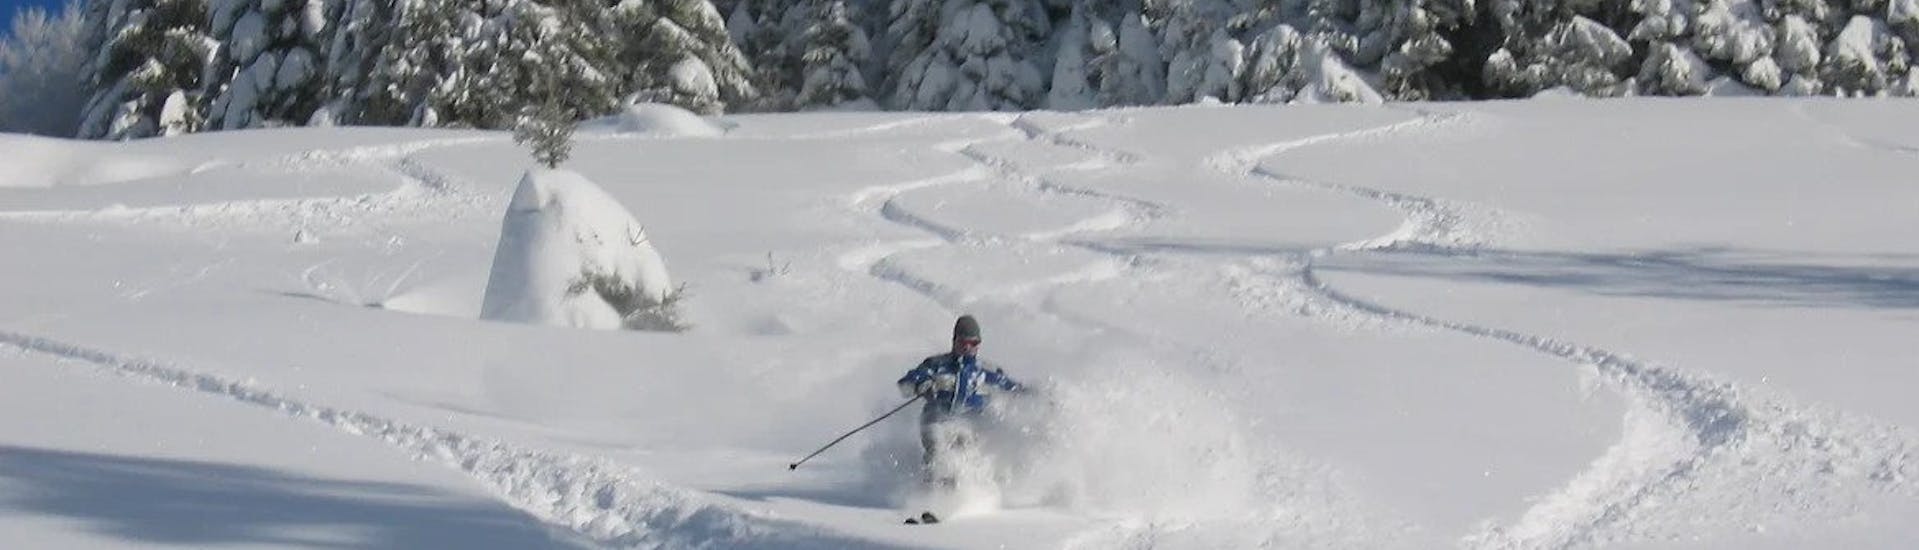 Volwassen skilessen (vanaf 14 j.) voor alle niveaus.